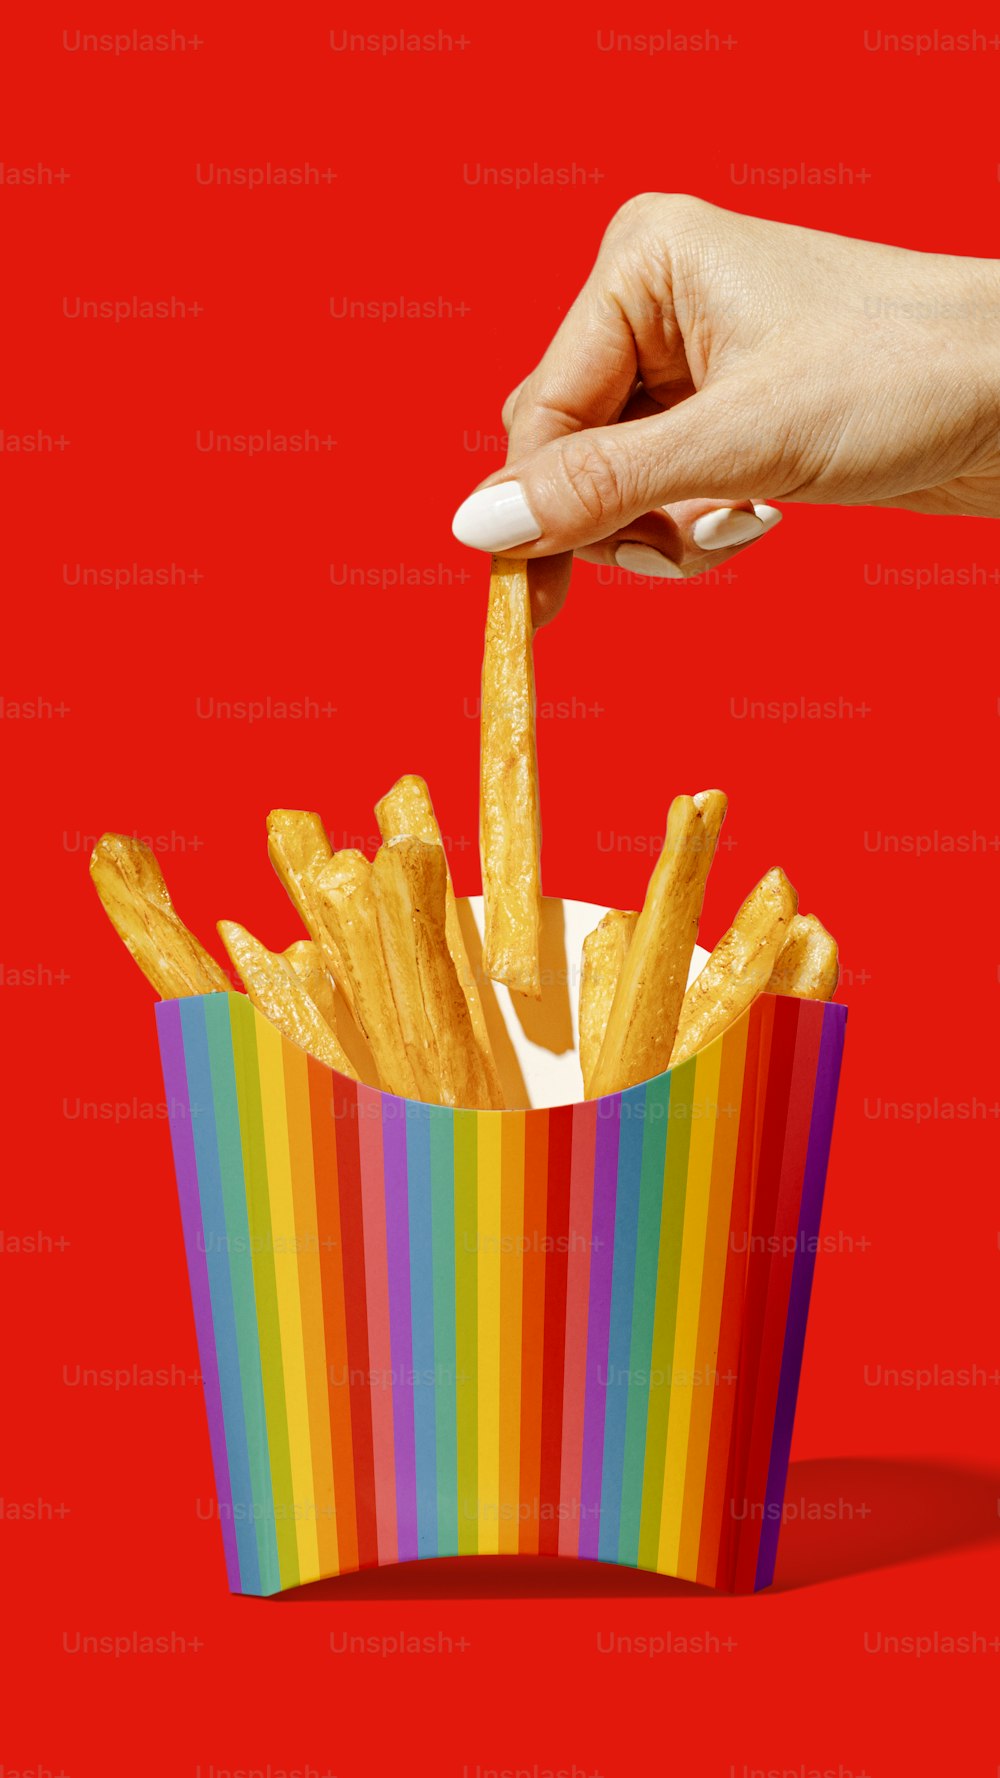 Una mano che raggiunge le patatine fritte in una scatola colorata